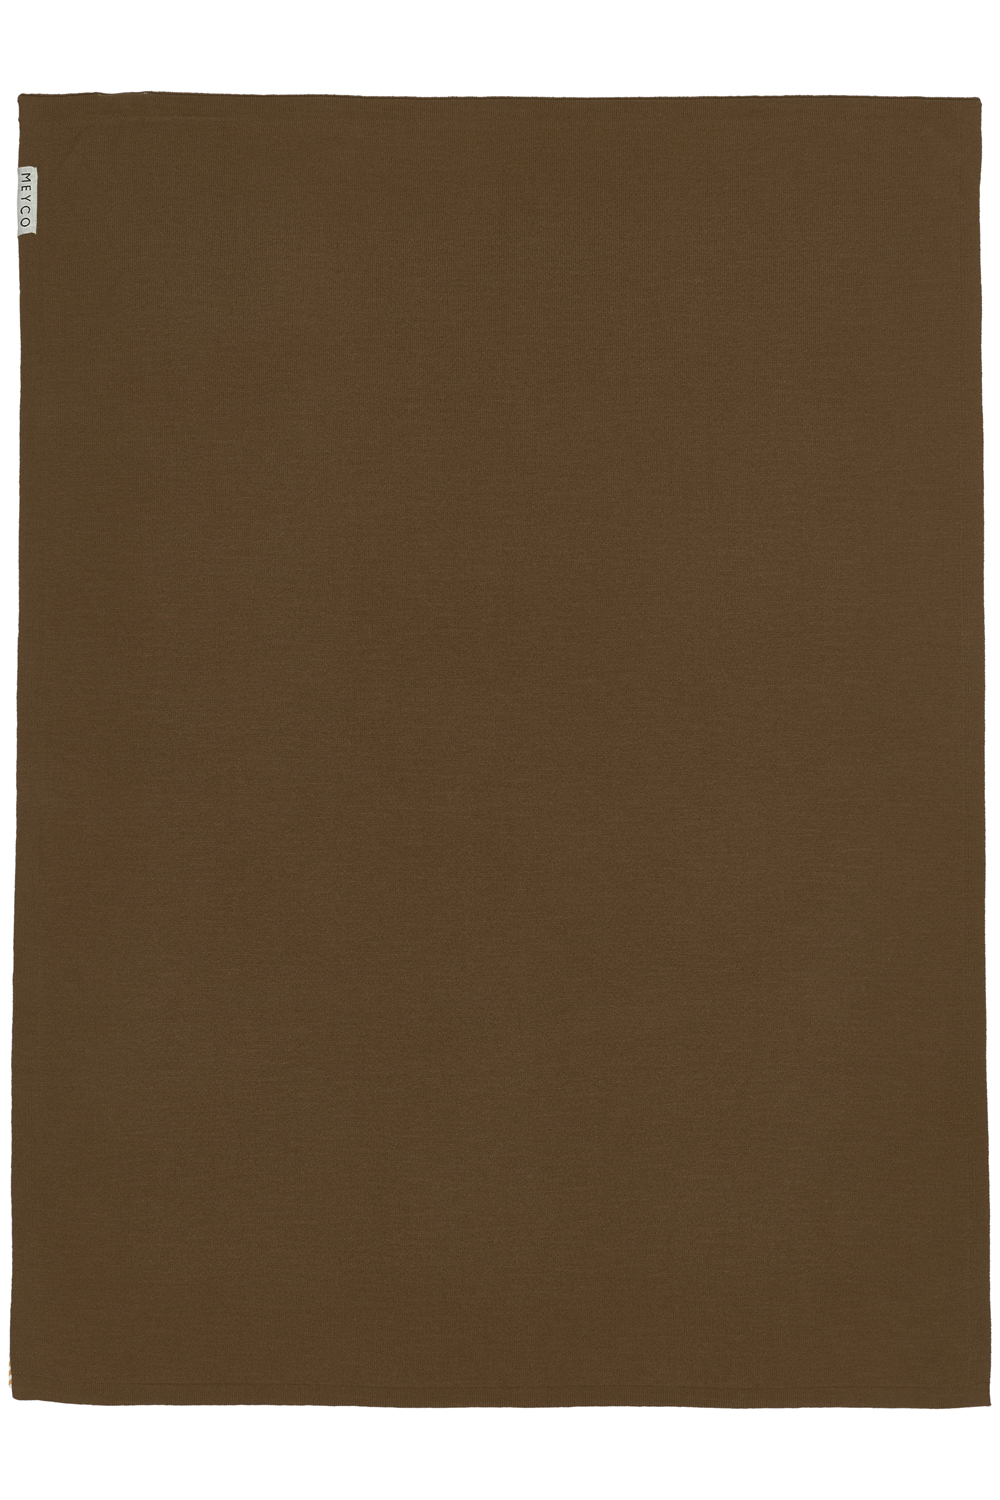 Wiegdeken Knit Basic - chocolate - 75x100cm